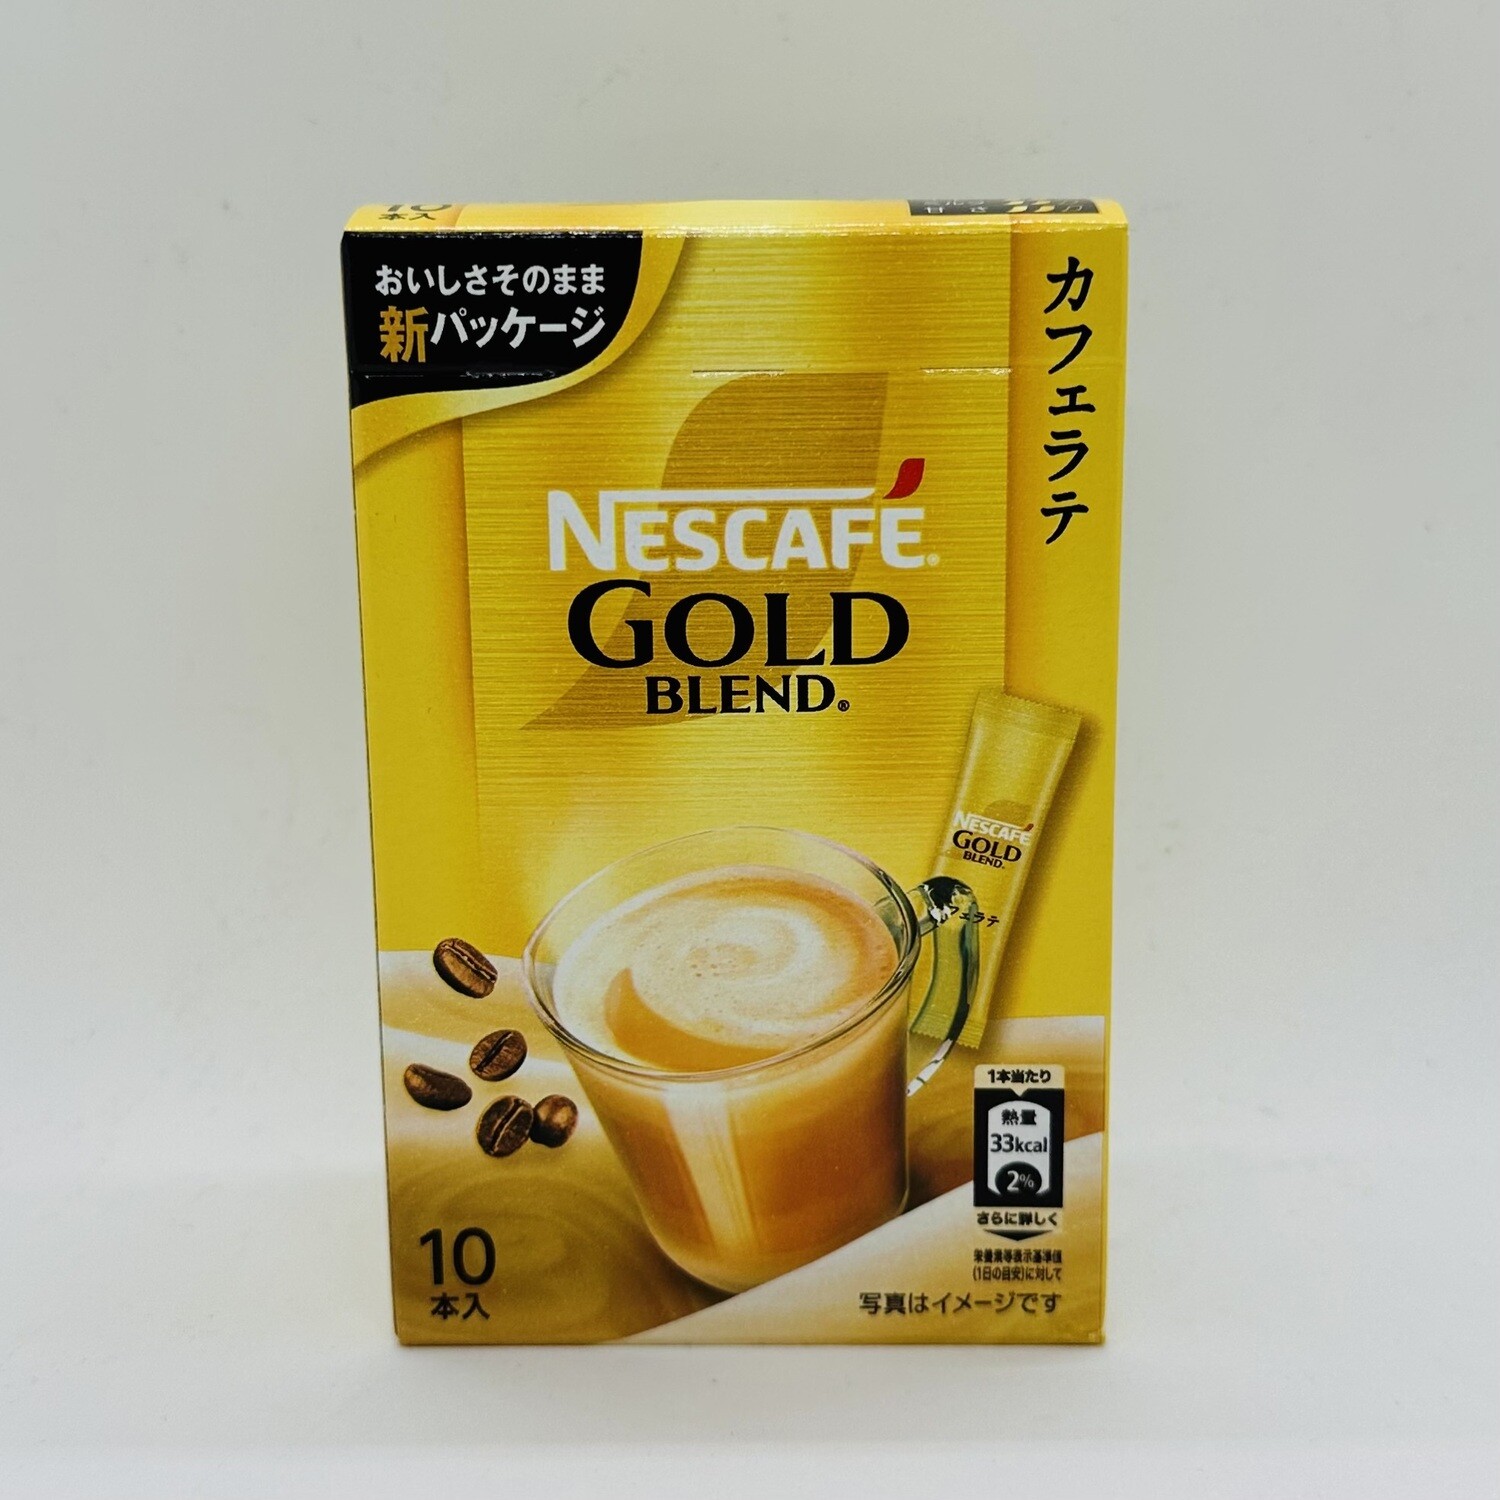 NESCAFE Gold Blend Cafe Latte